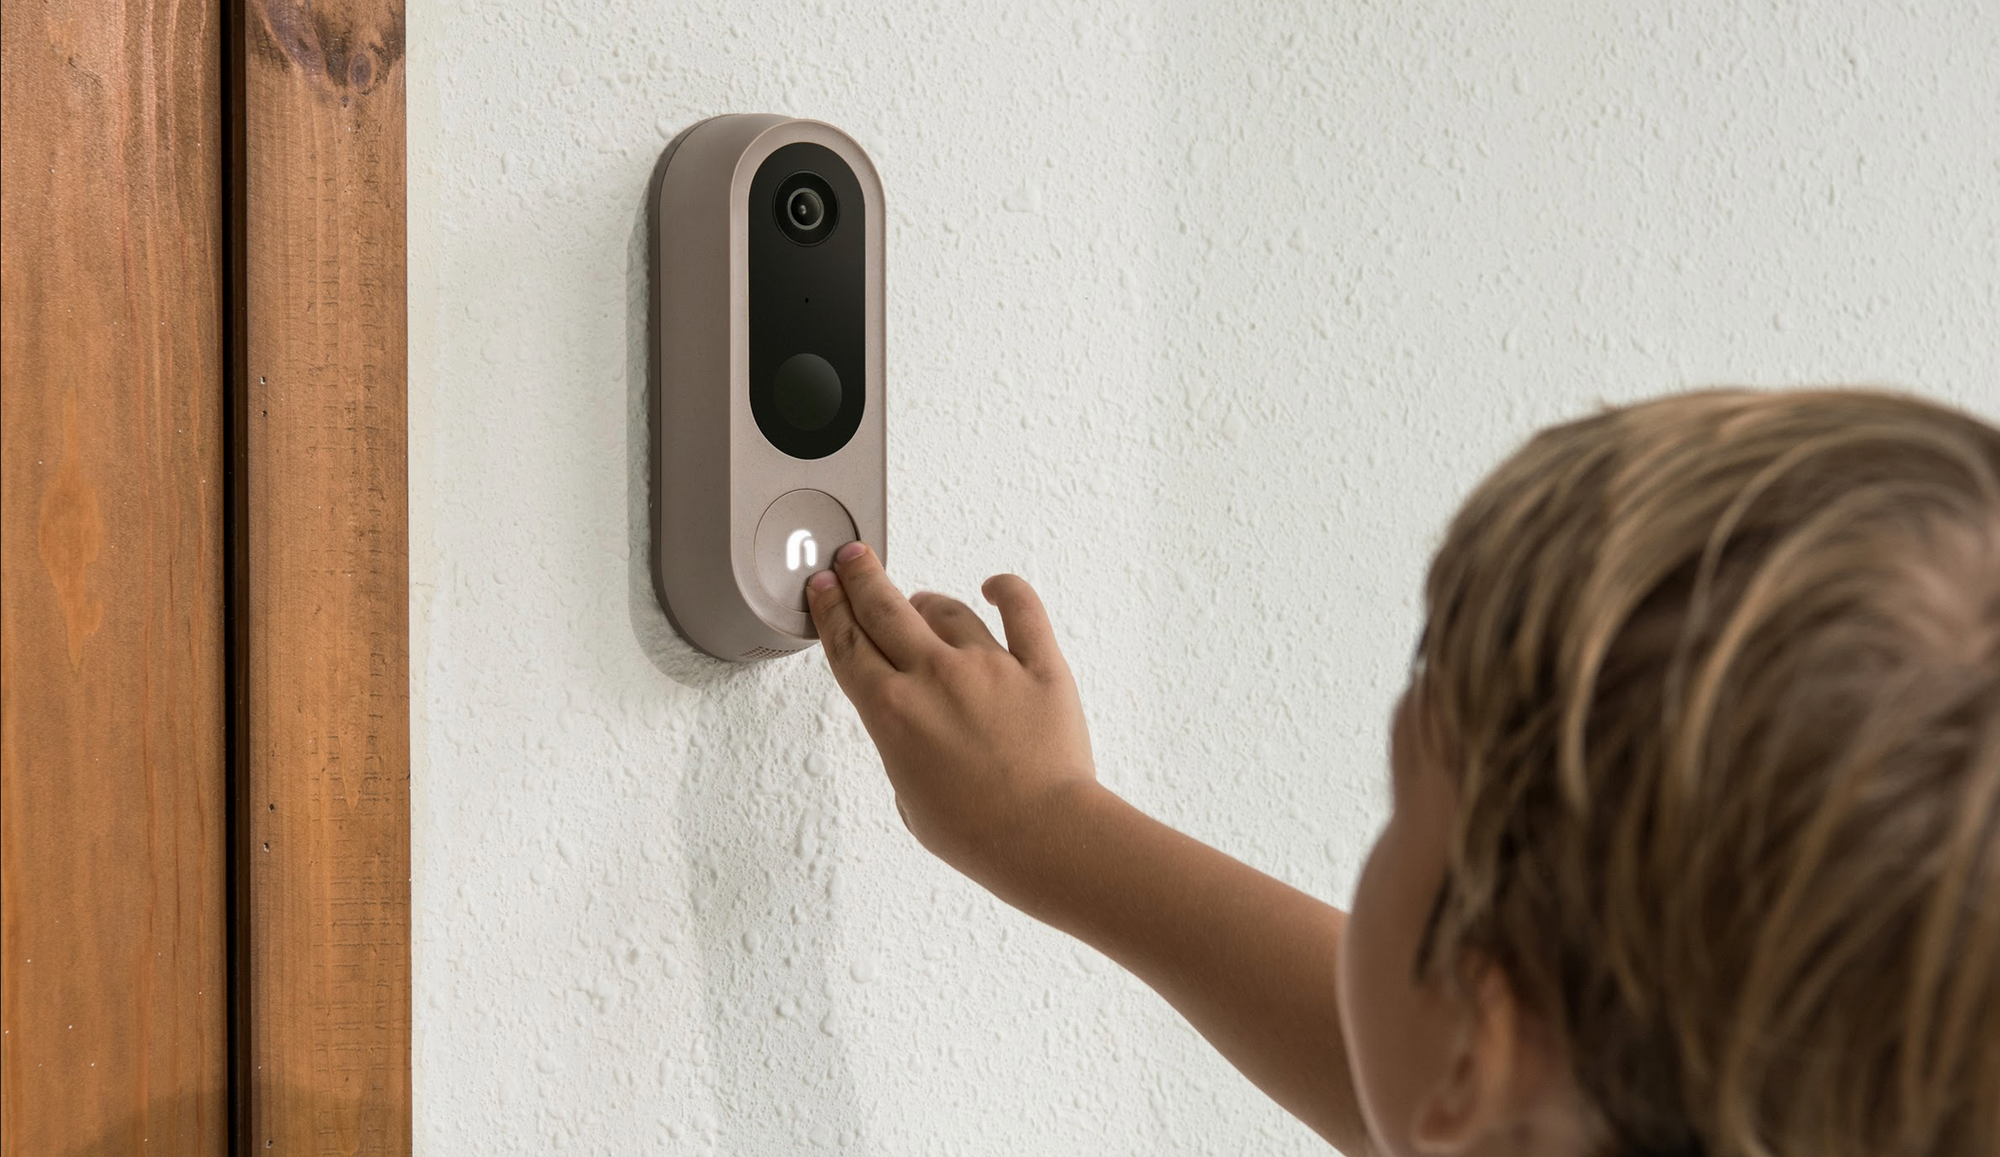 Smart Home Security With a Smart Looking Design," says Design Milk of Doorbell Cam